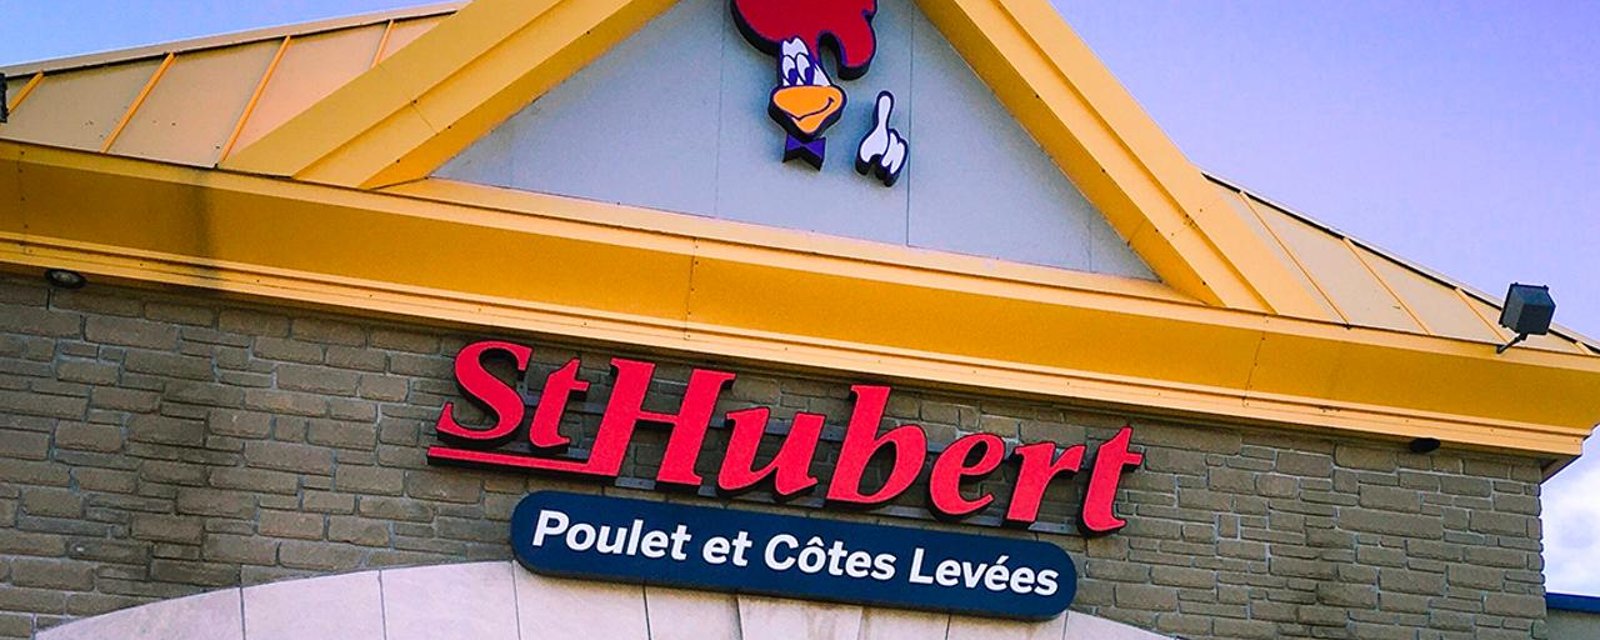 Les restaurants St-Hubert se font sévèrement critiquer par un chroniqueur